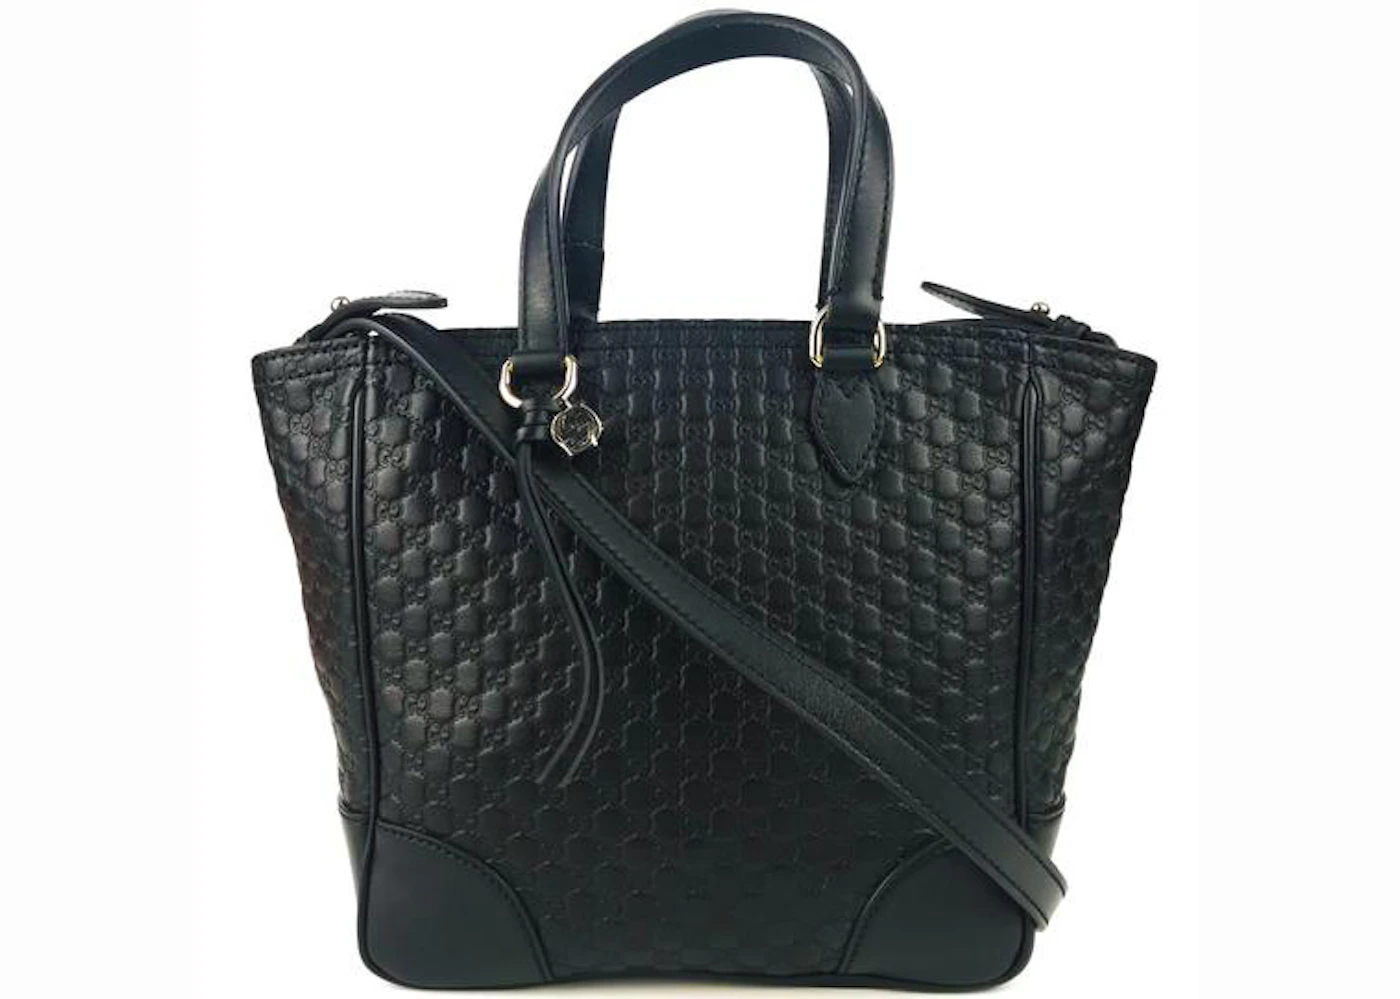 Gucci Bree Ssima Leather Tote in Black